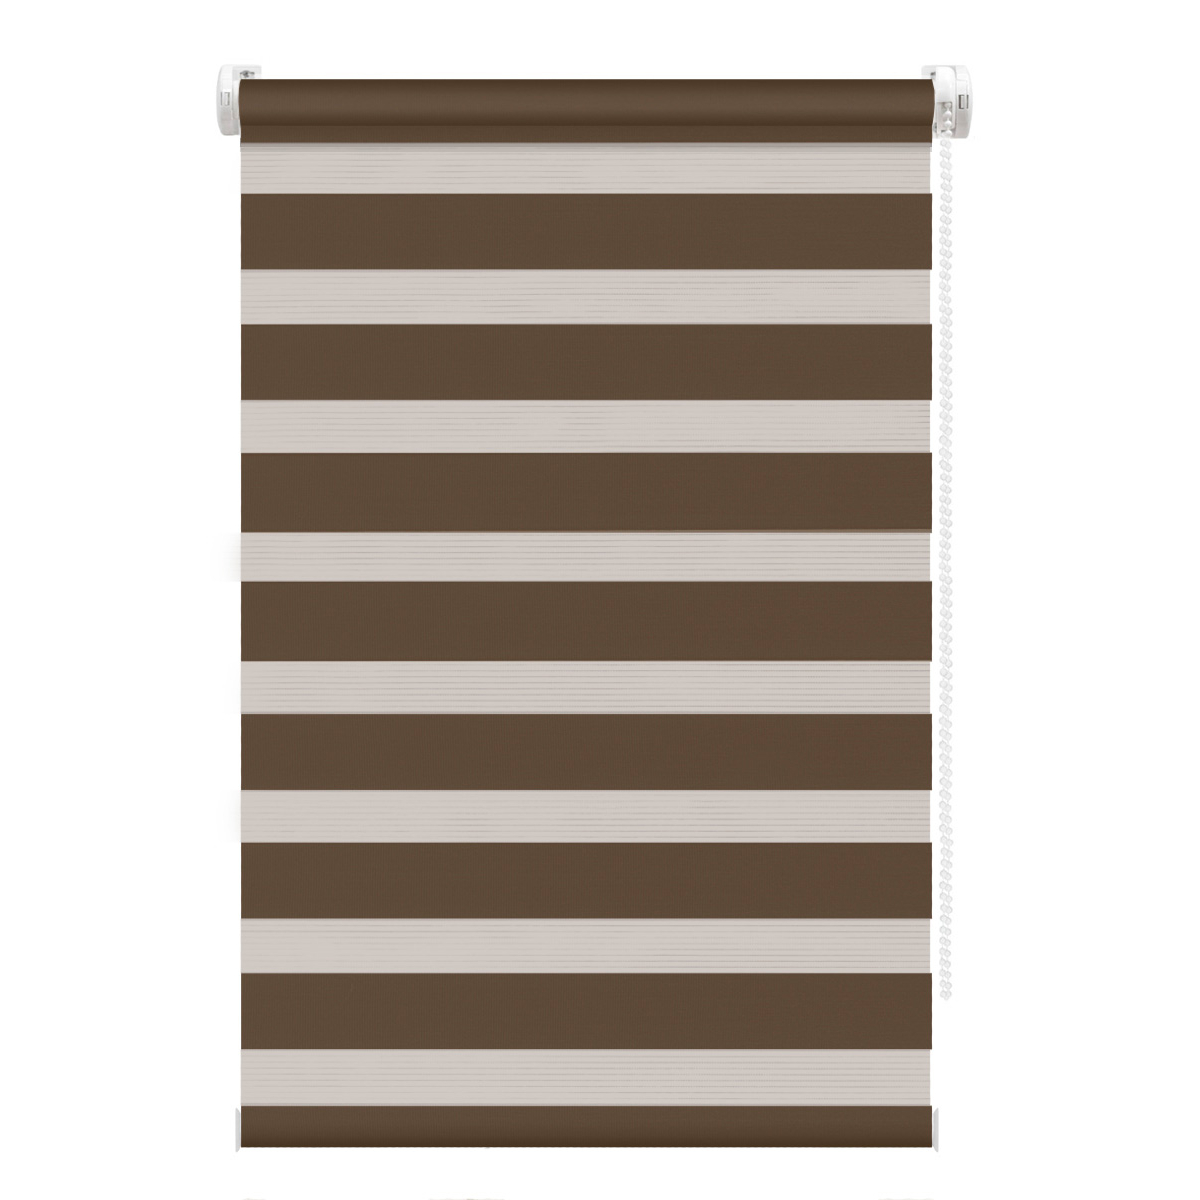 Рулонная штора FixLine Amigo Base День-Ночь коричневая 50х160 см рулонная штора fixline amigo basic коричневая 50х160 см